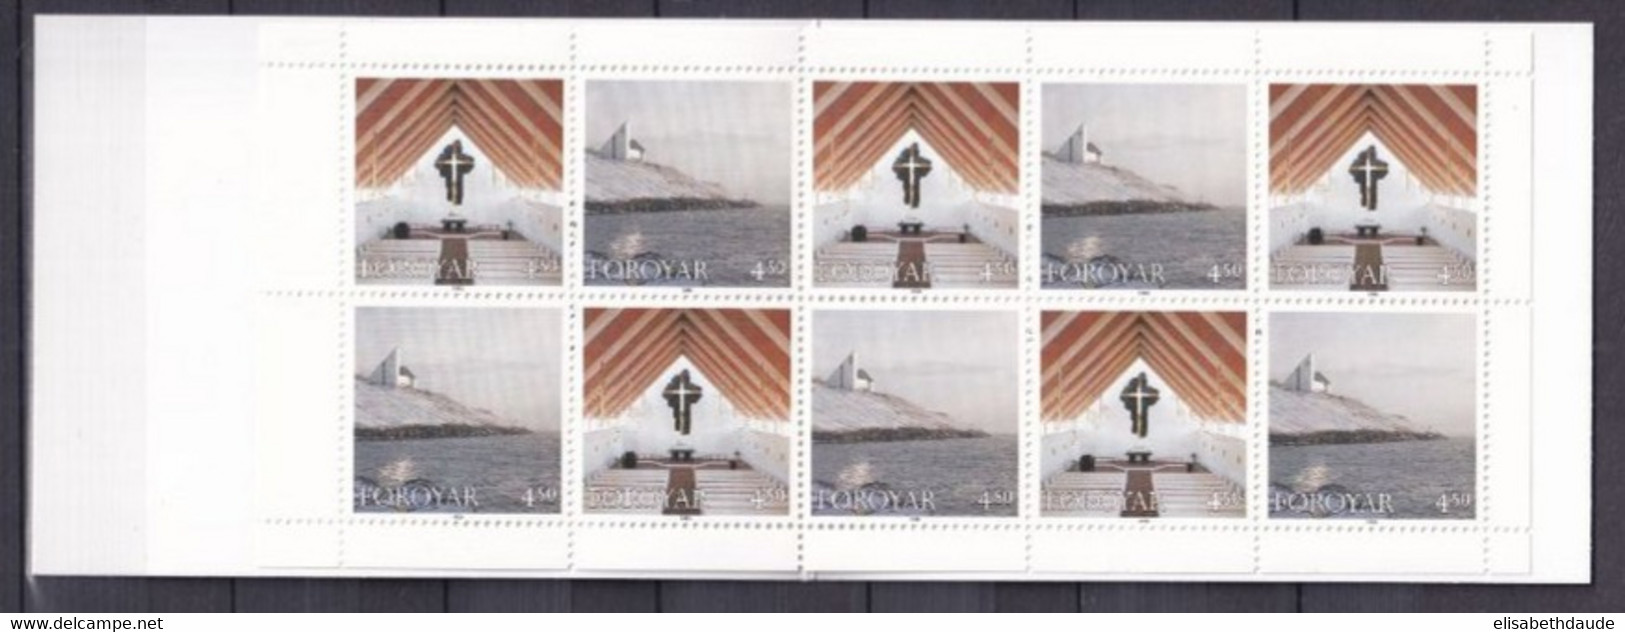 FEROE - 1998 - CARNET YVERT N° C342 ** MNH - COTE = 18 EUR. - NOEL - Färöer Inseln